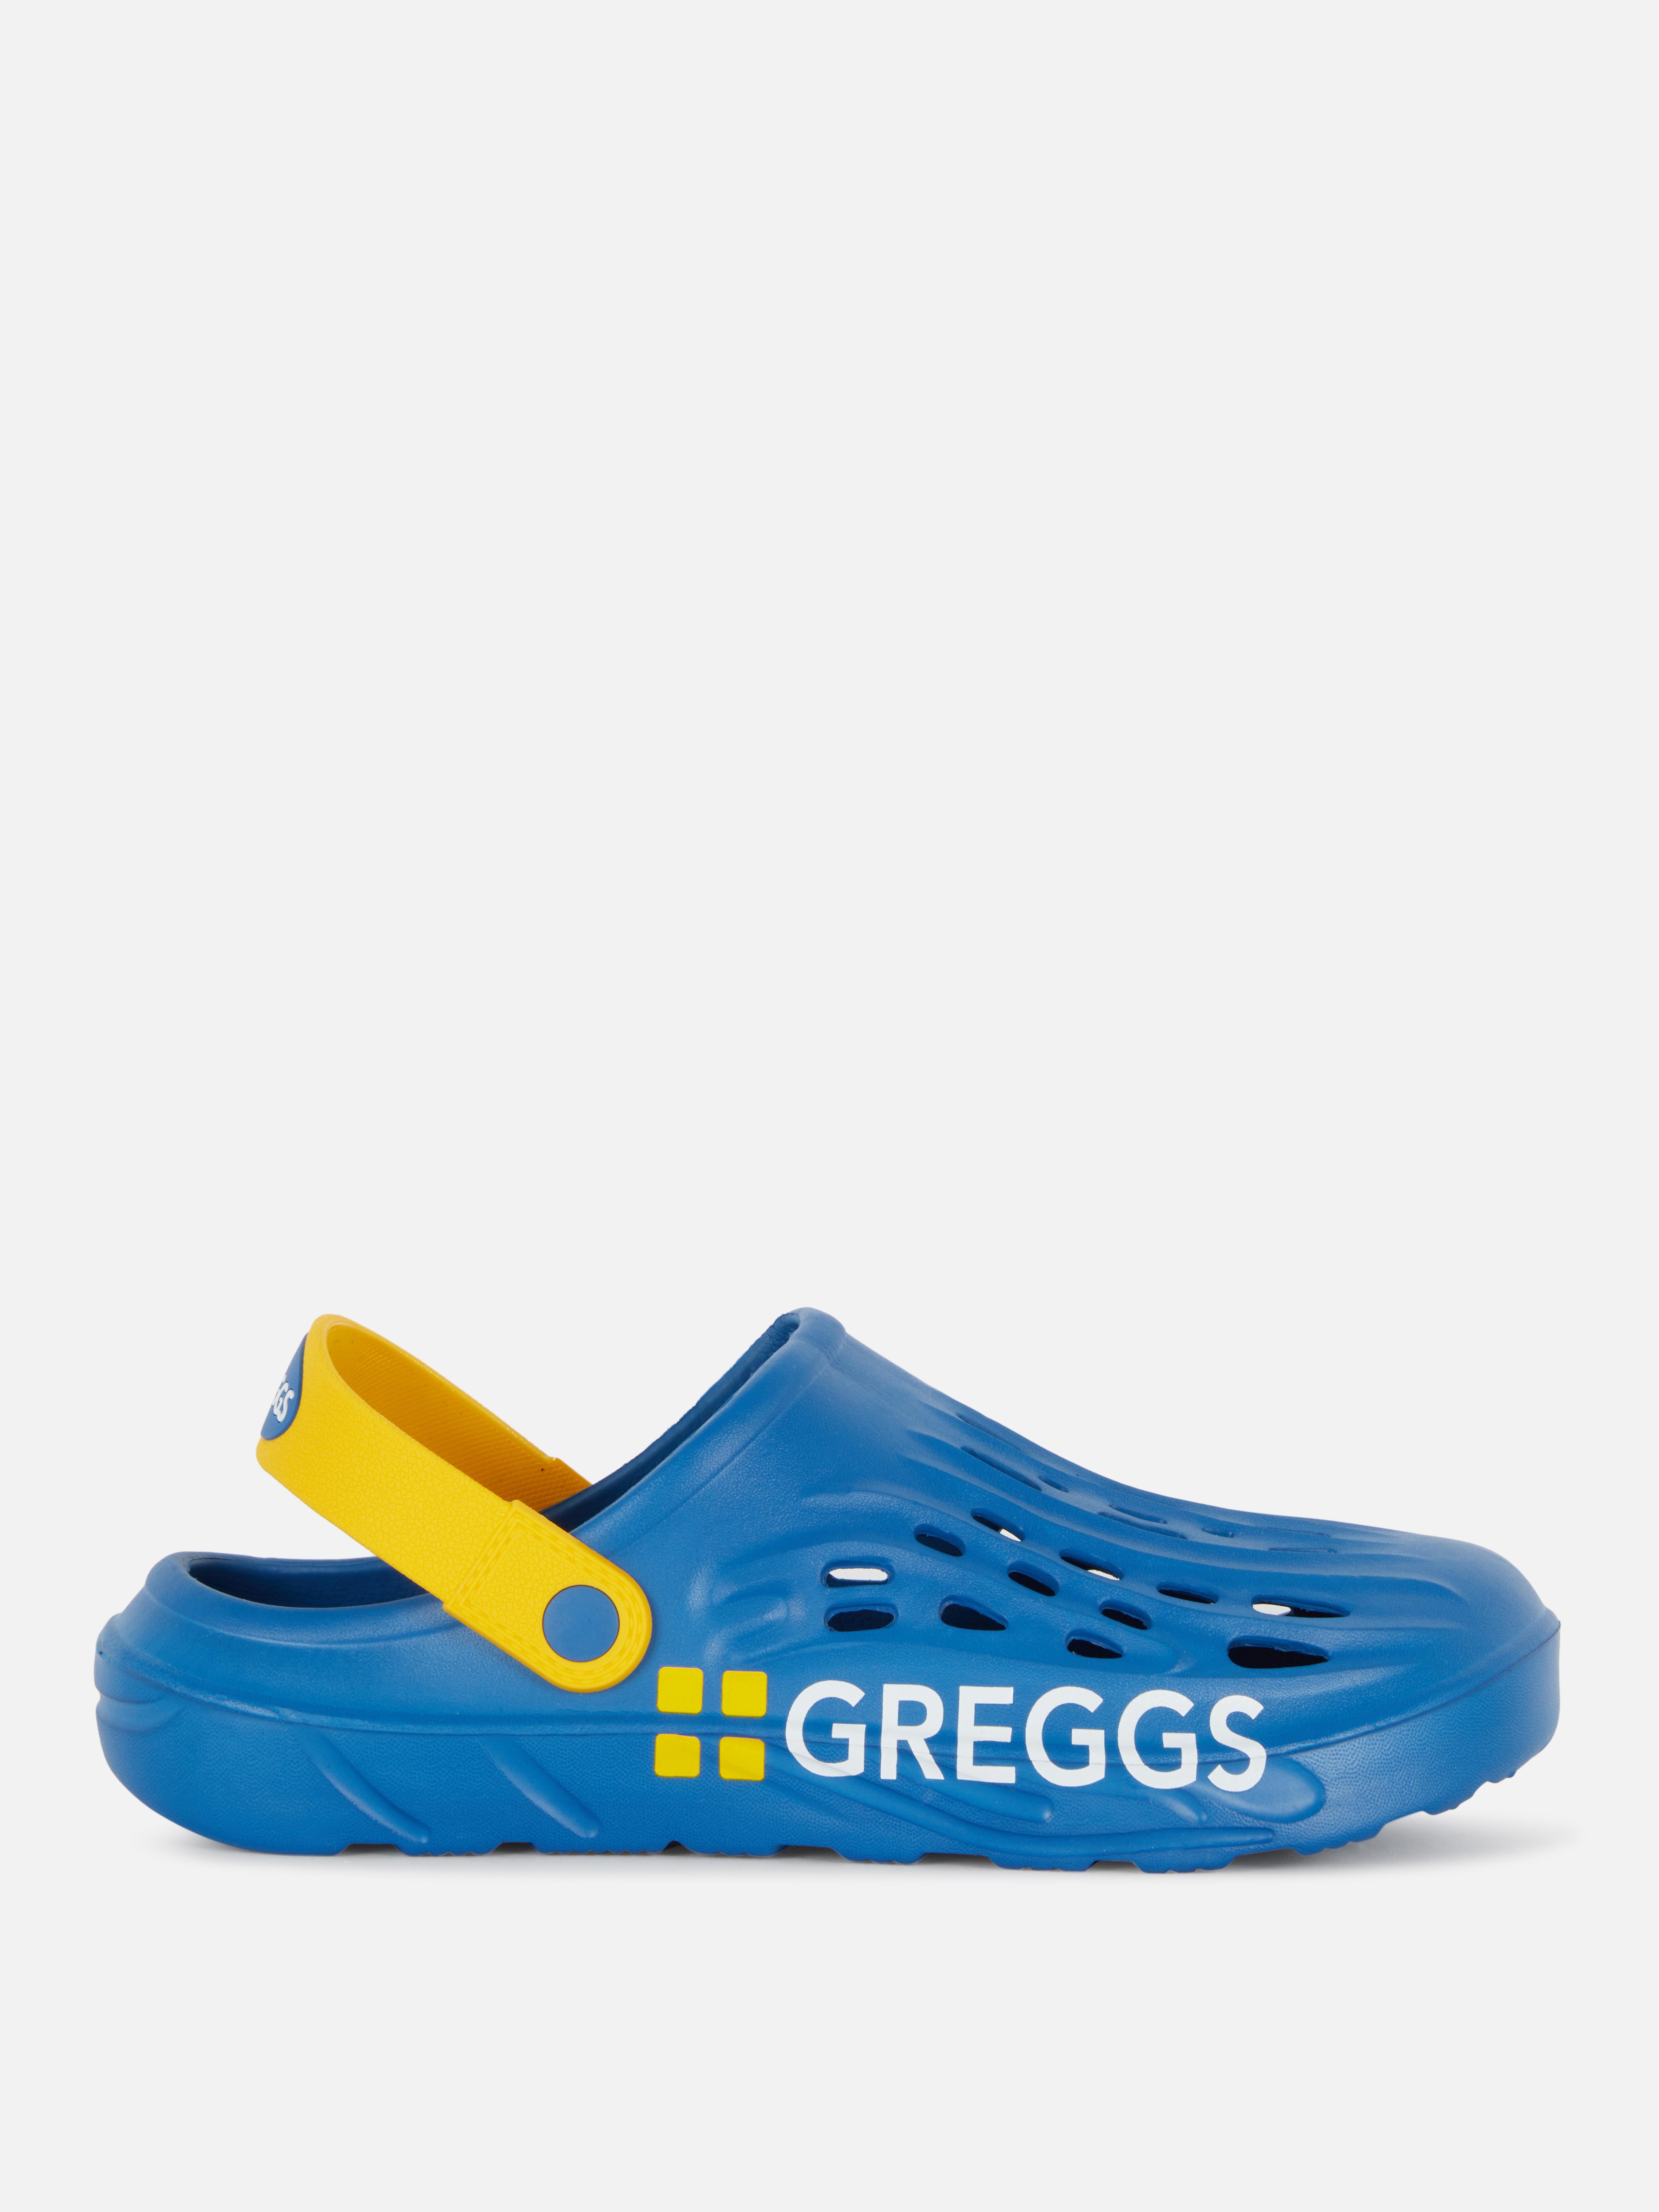 Greggs Slingback Clogs